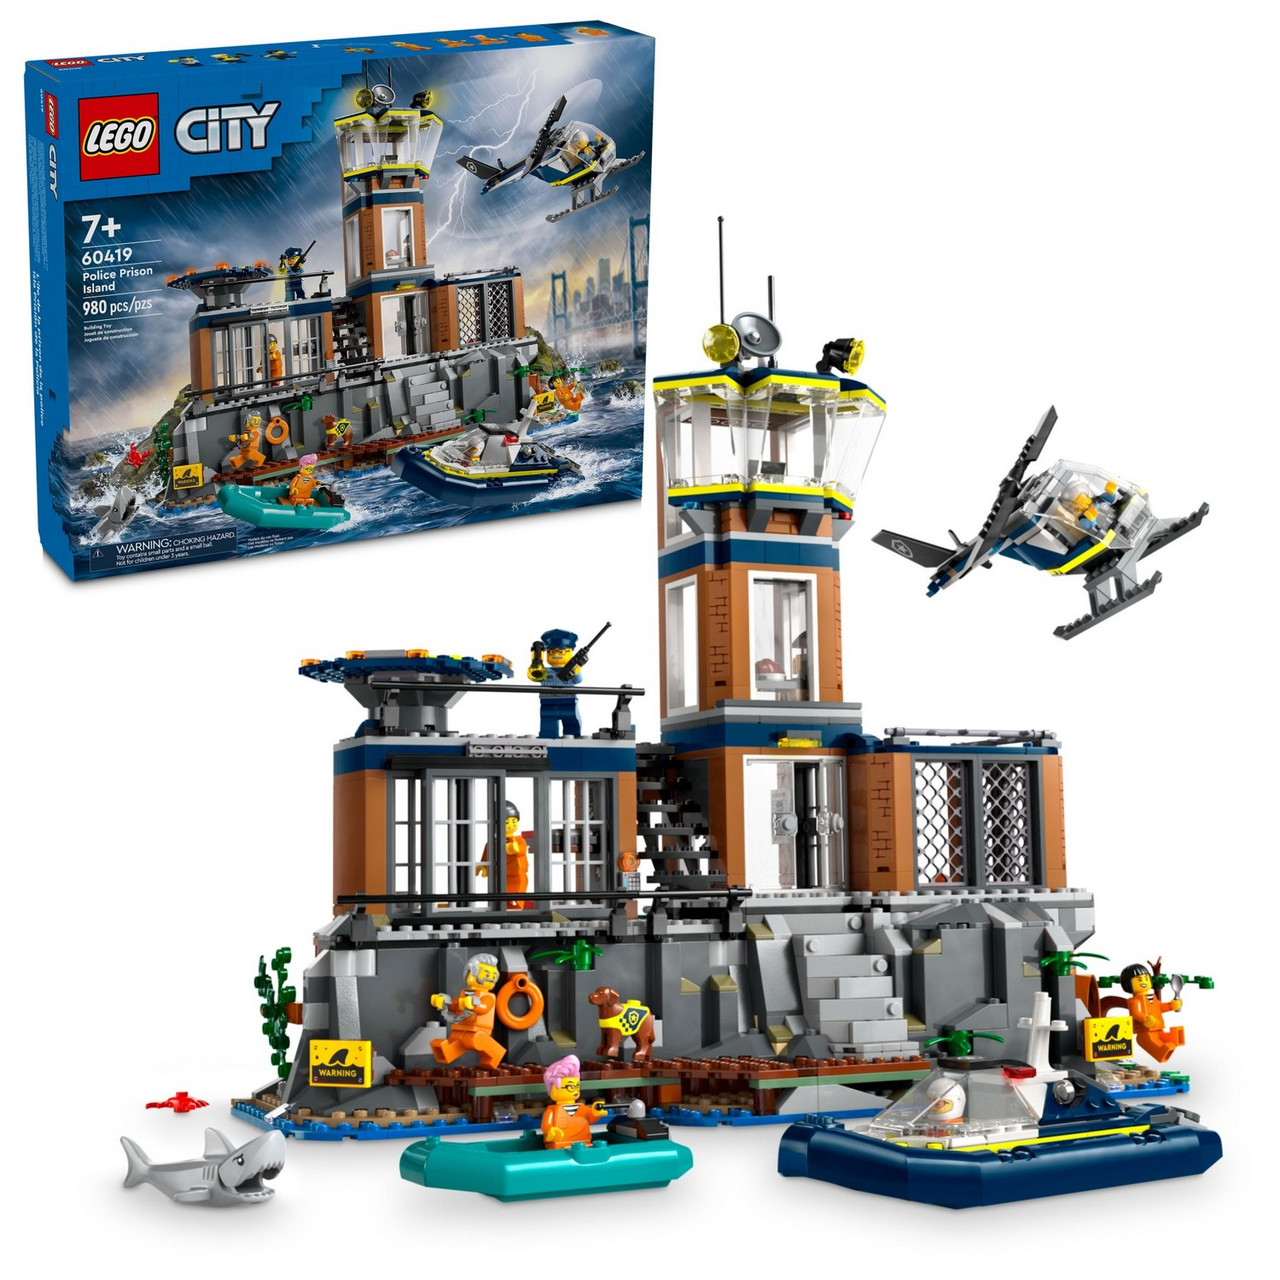 Lego 60419 Город Полицейский тюремный остров